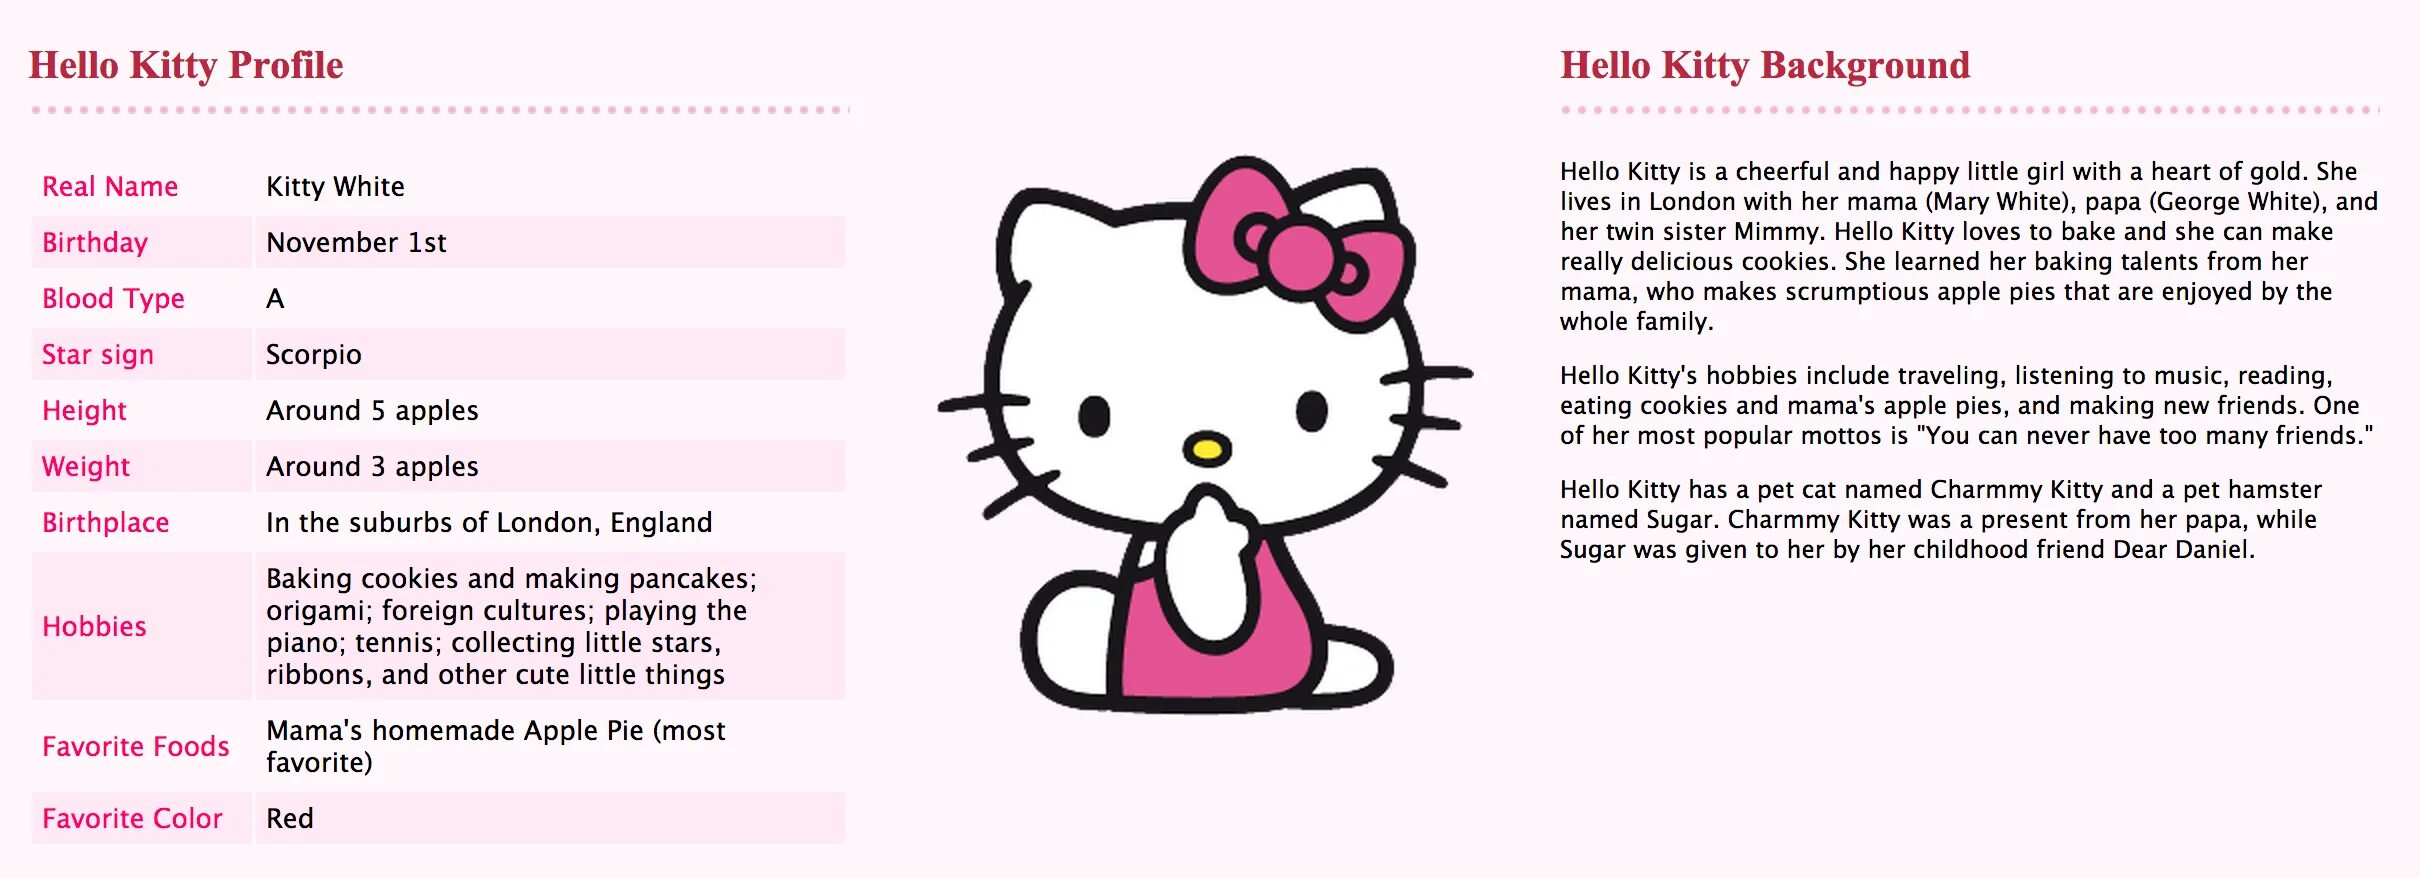 Почему хеллоу. Хеллоу Китти имена. Hello Kitty персонажи с именами. Hello Kitty с описанием. Хеллоу Китти и друзья имена.